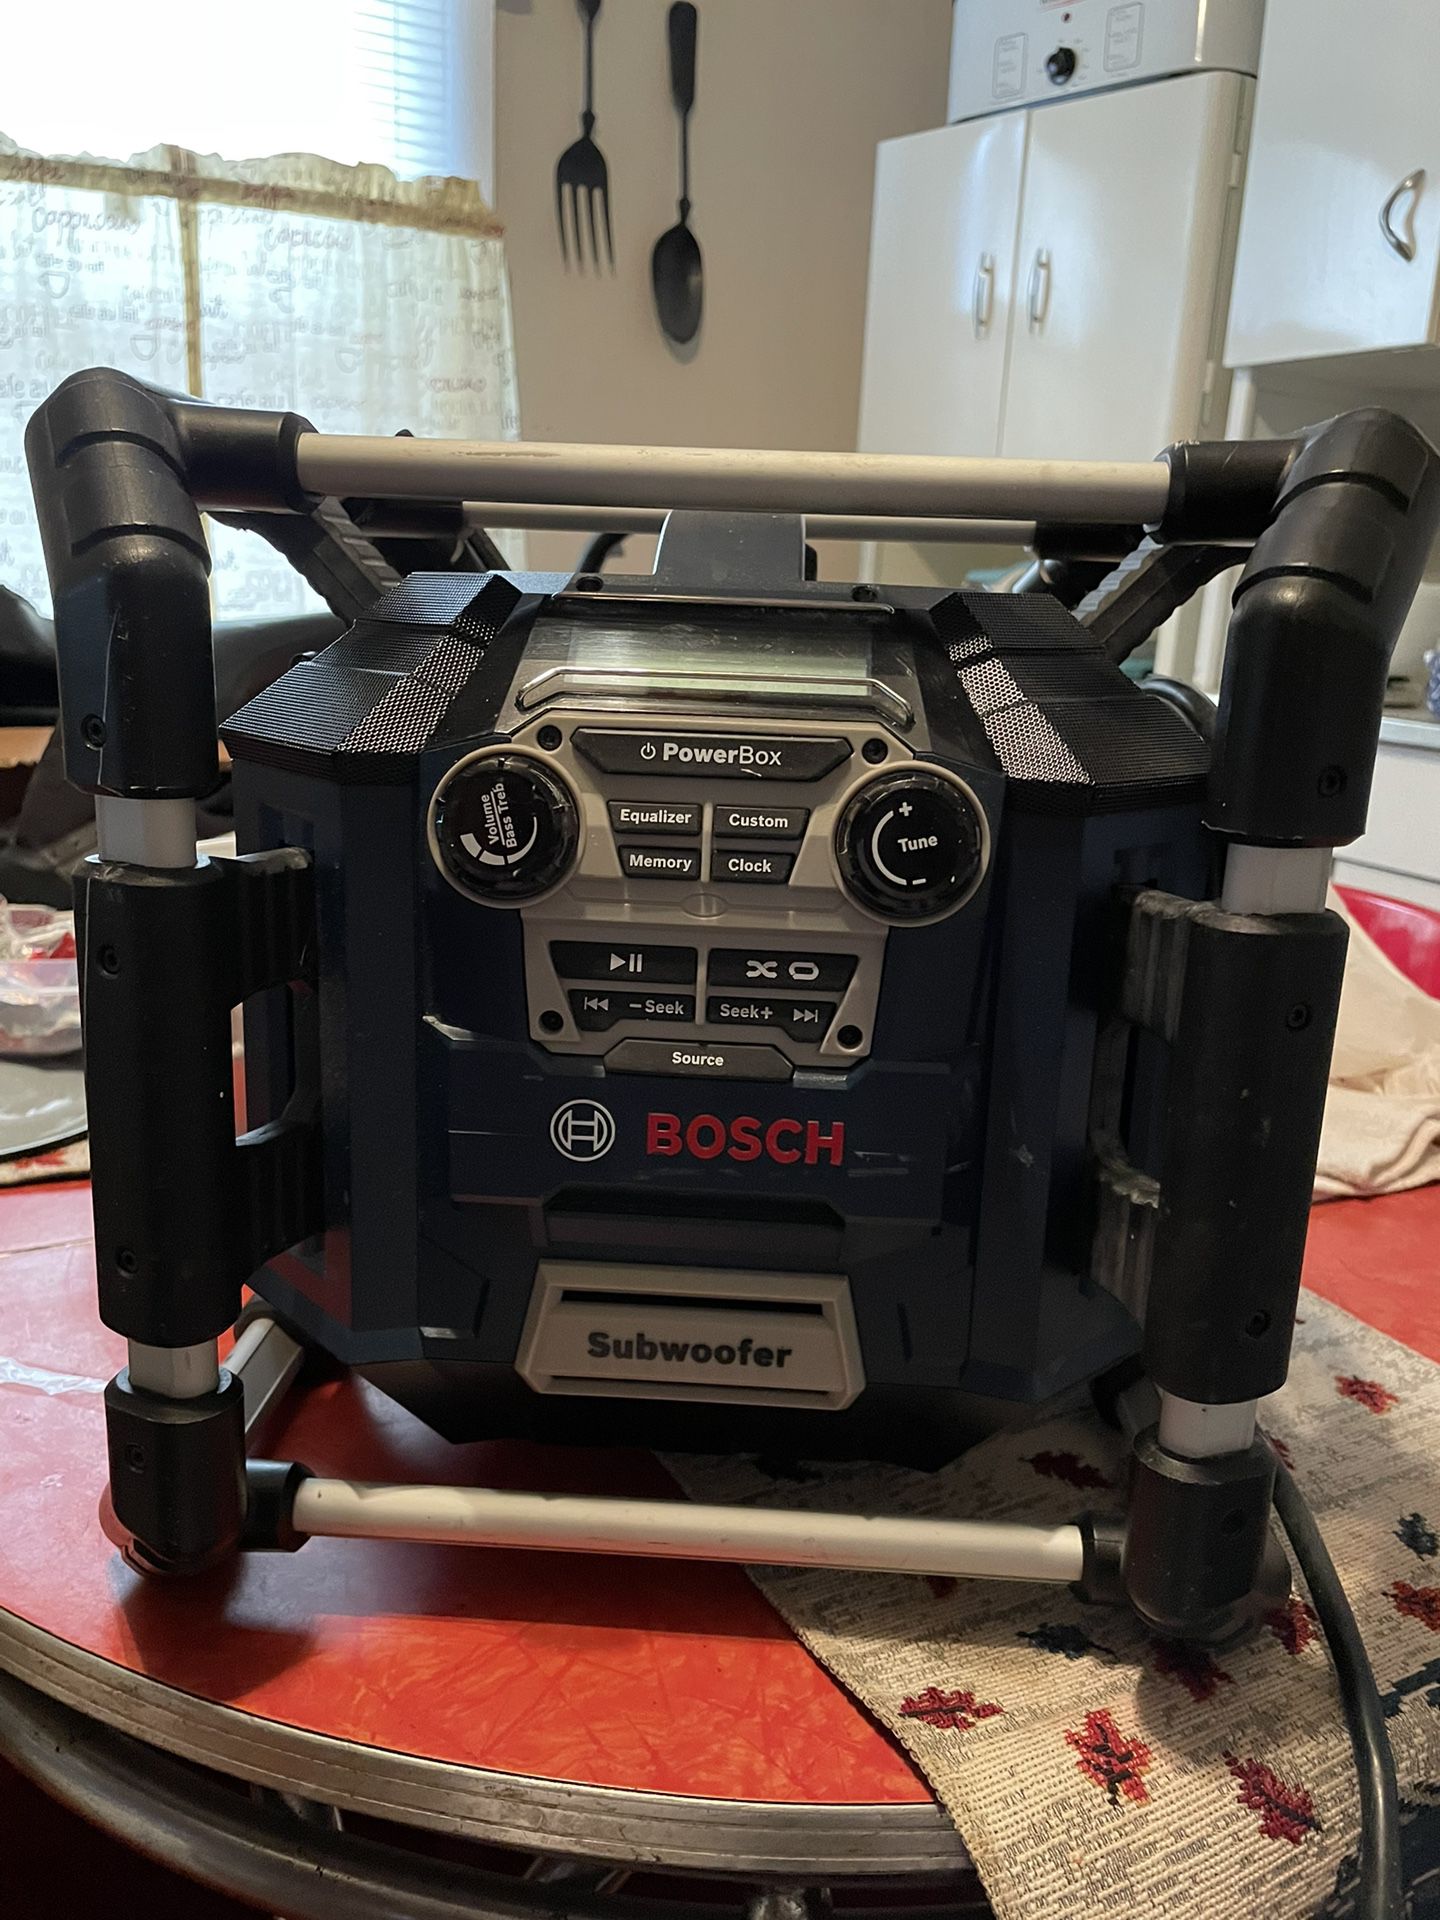 Bosch Subwoofer Radio